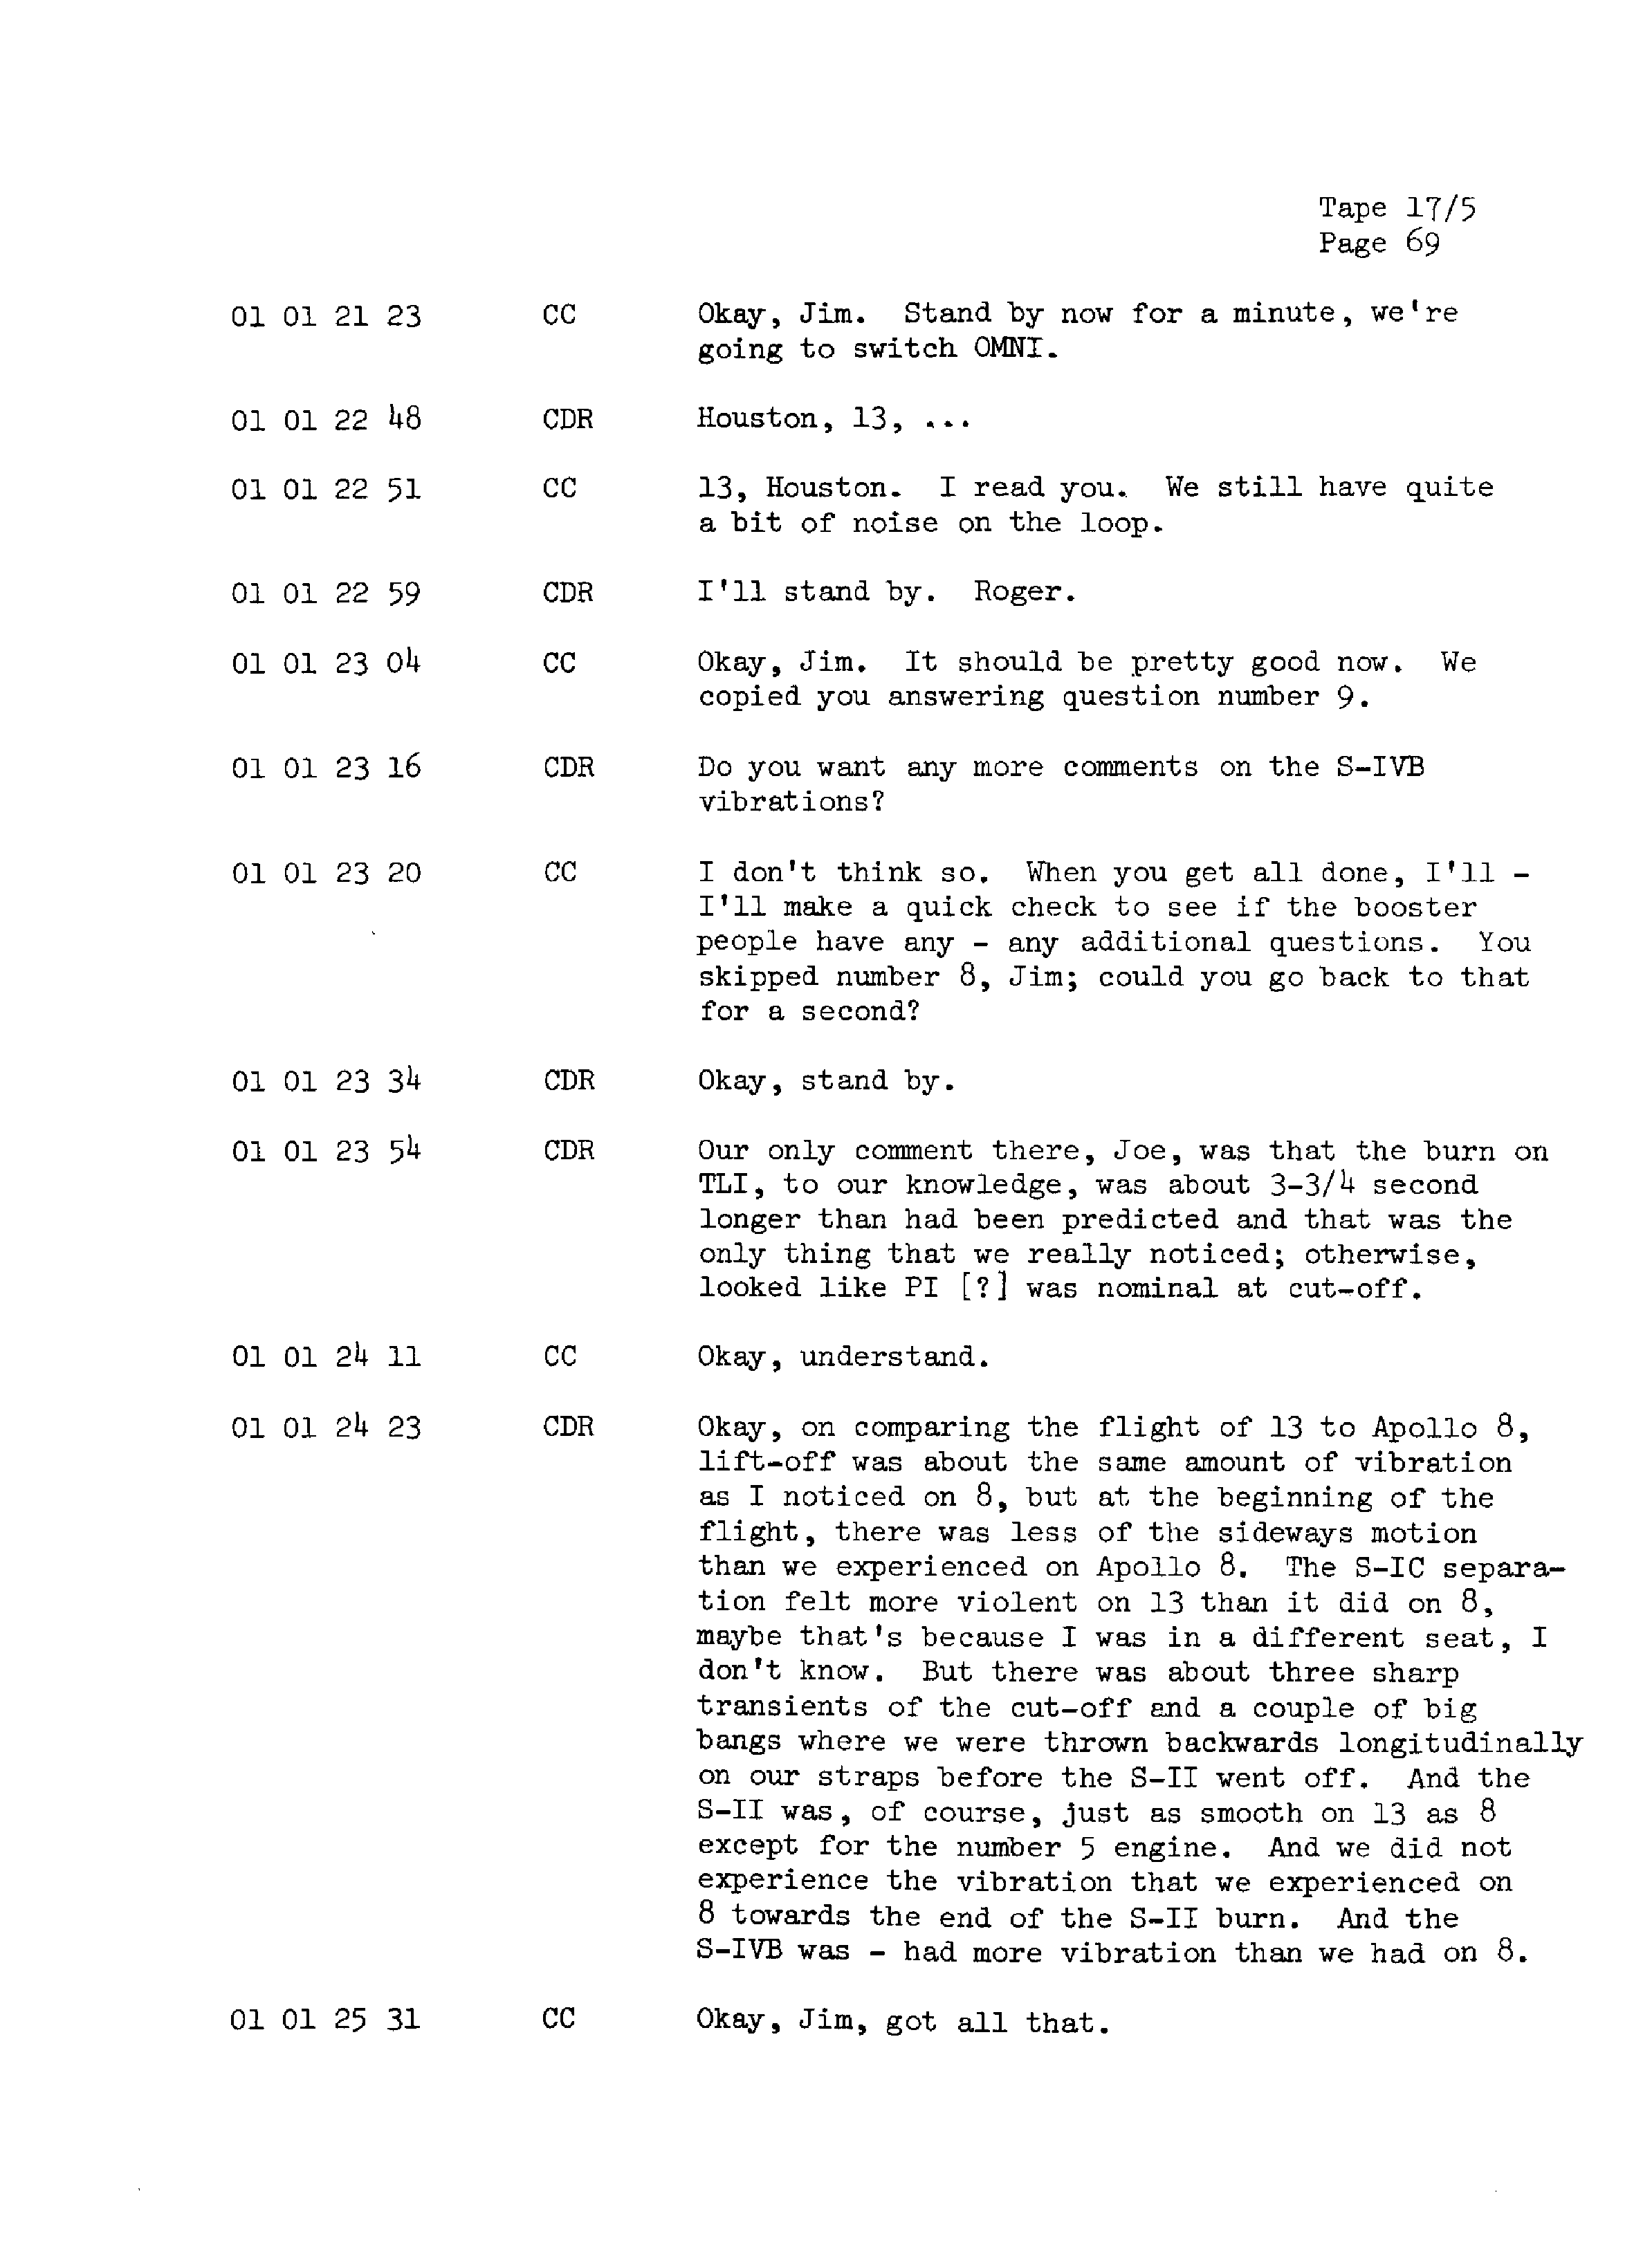 Page 76 of Apollo 13’s original transcript